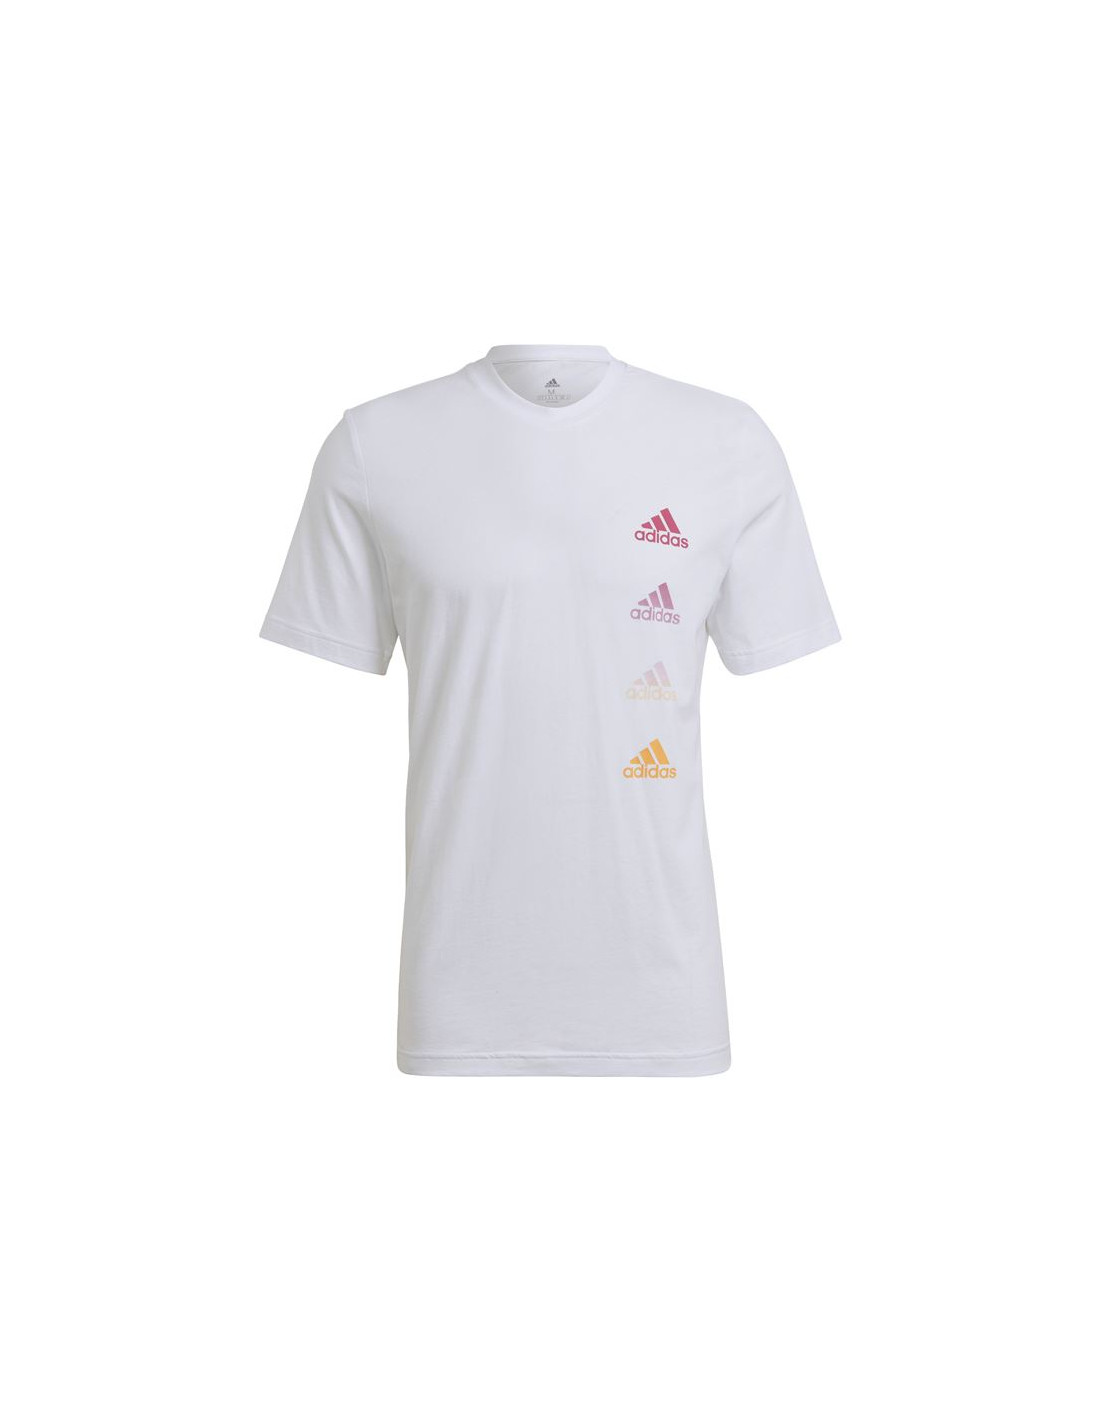 Camiseta adidas essentials gradient logo